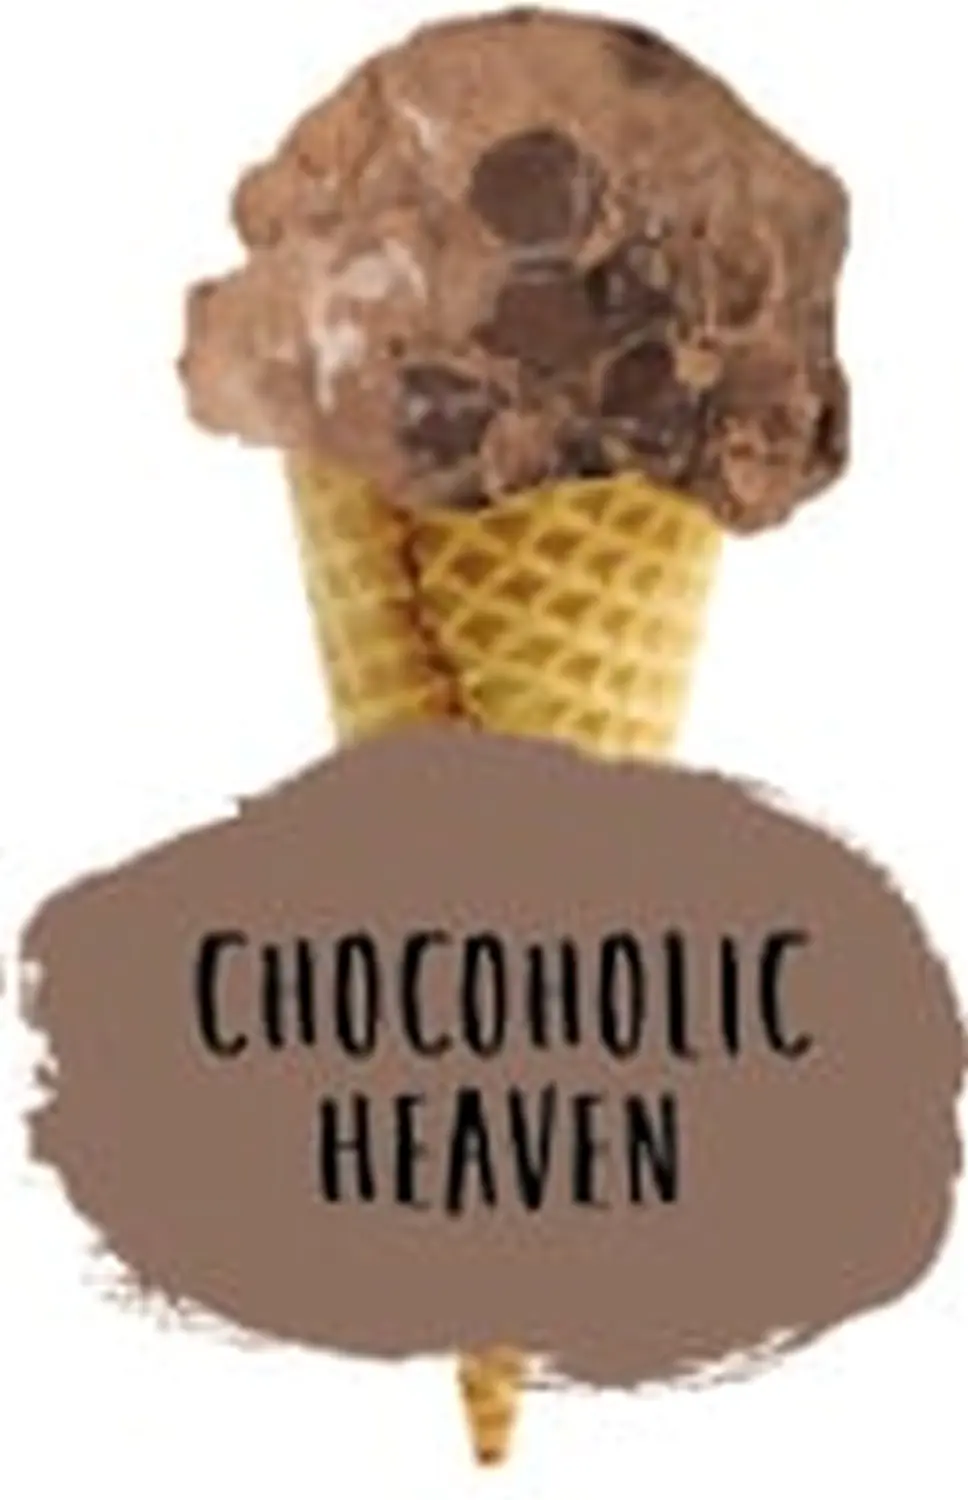 Sevanetti Chocoholic Heaven Ice Cream